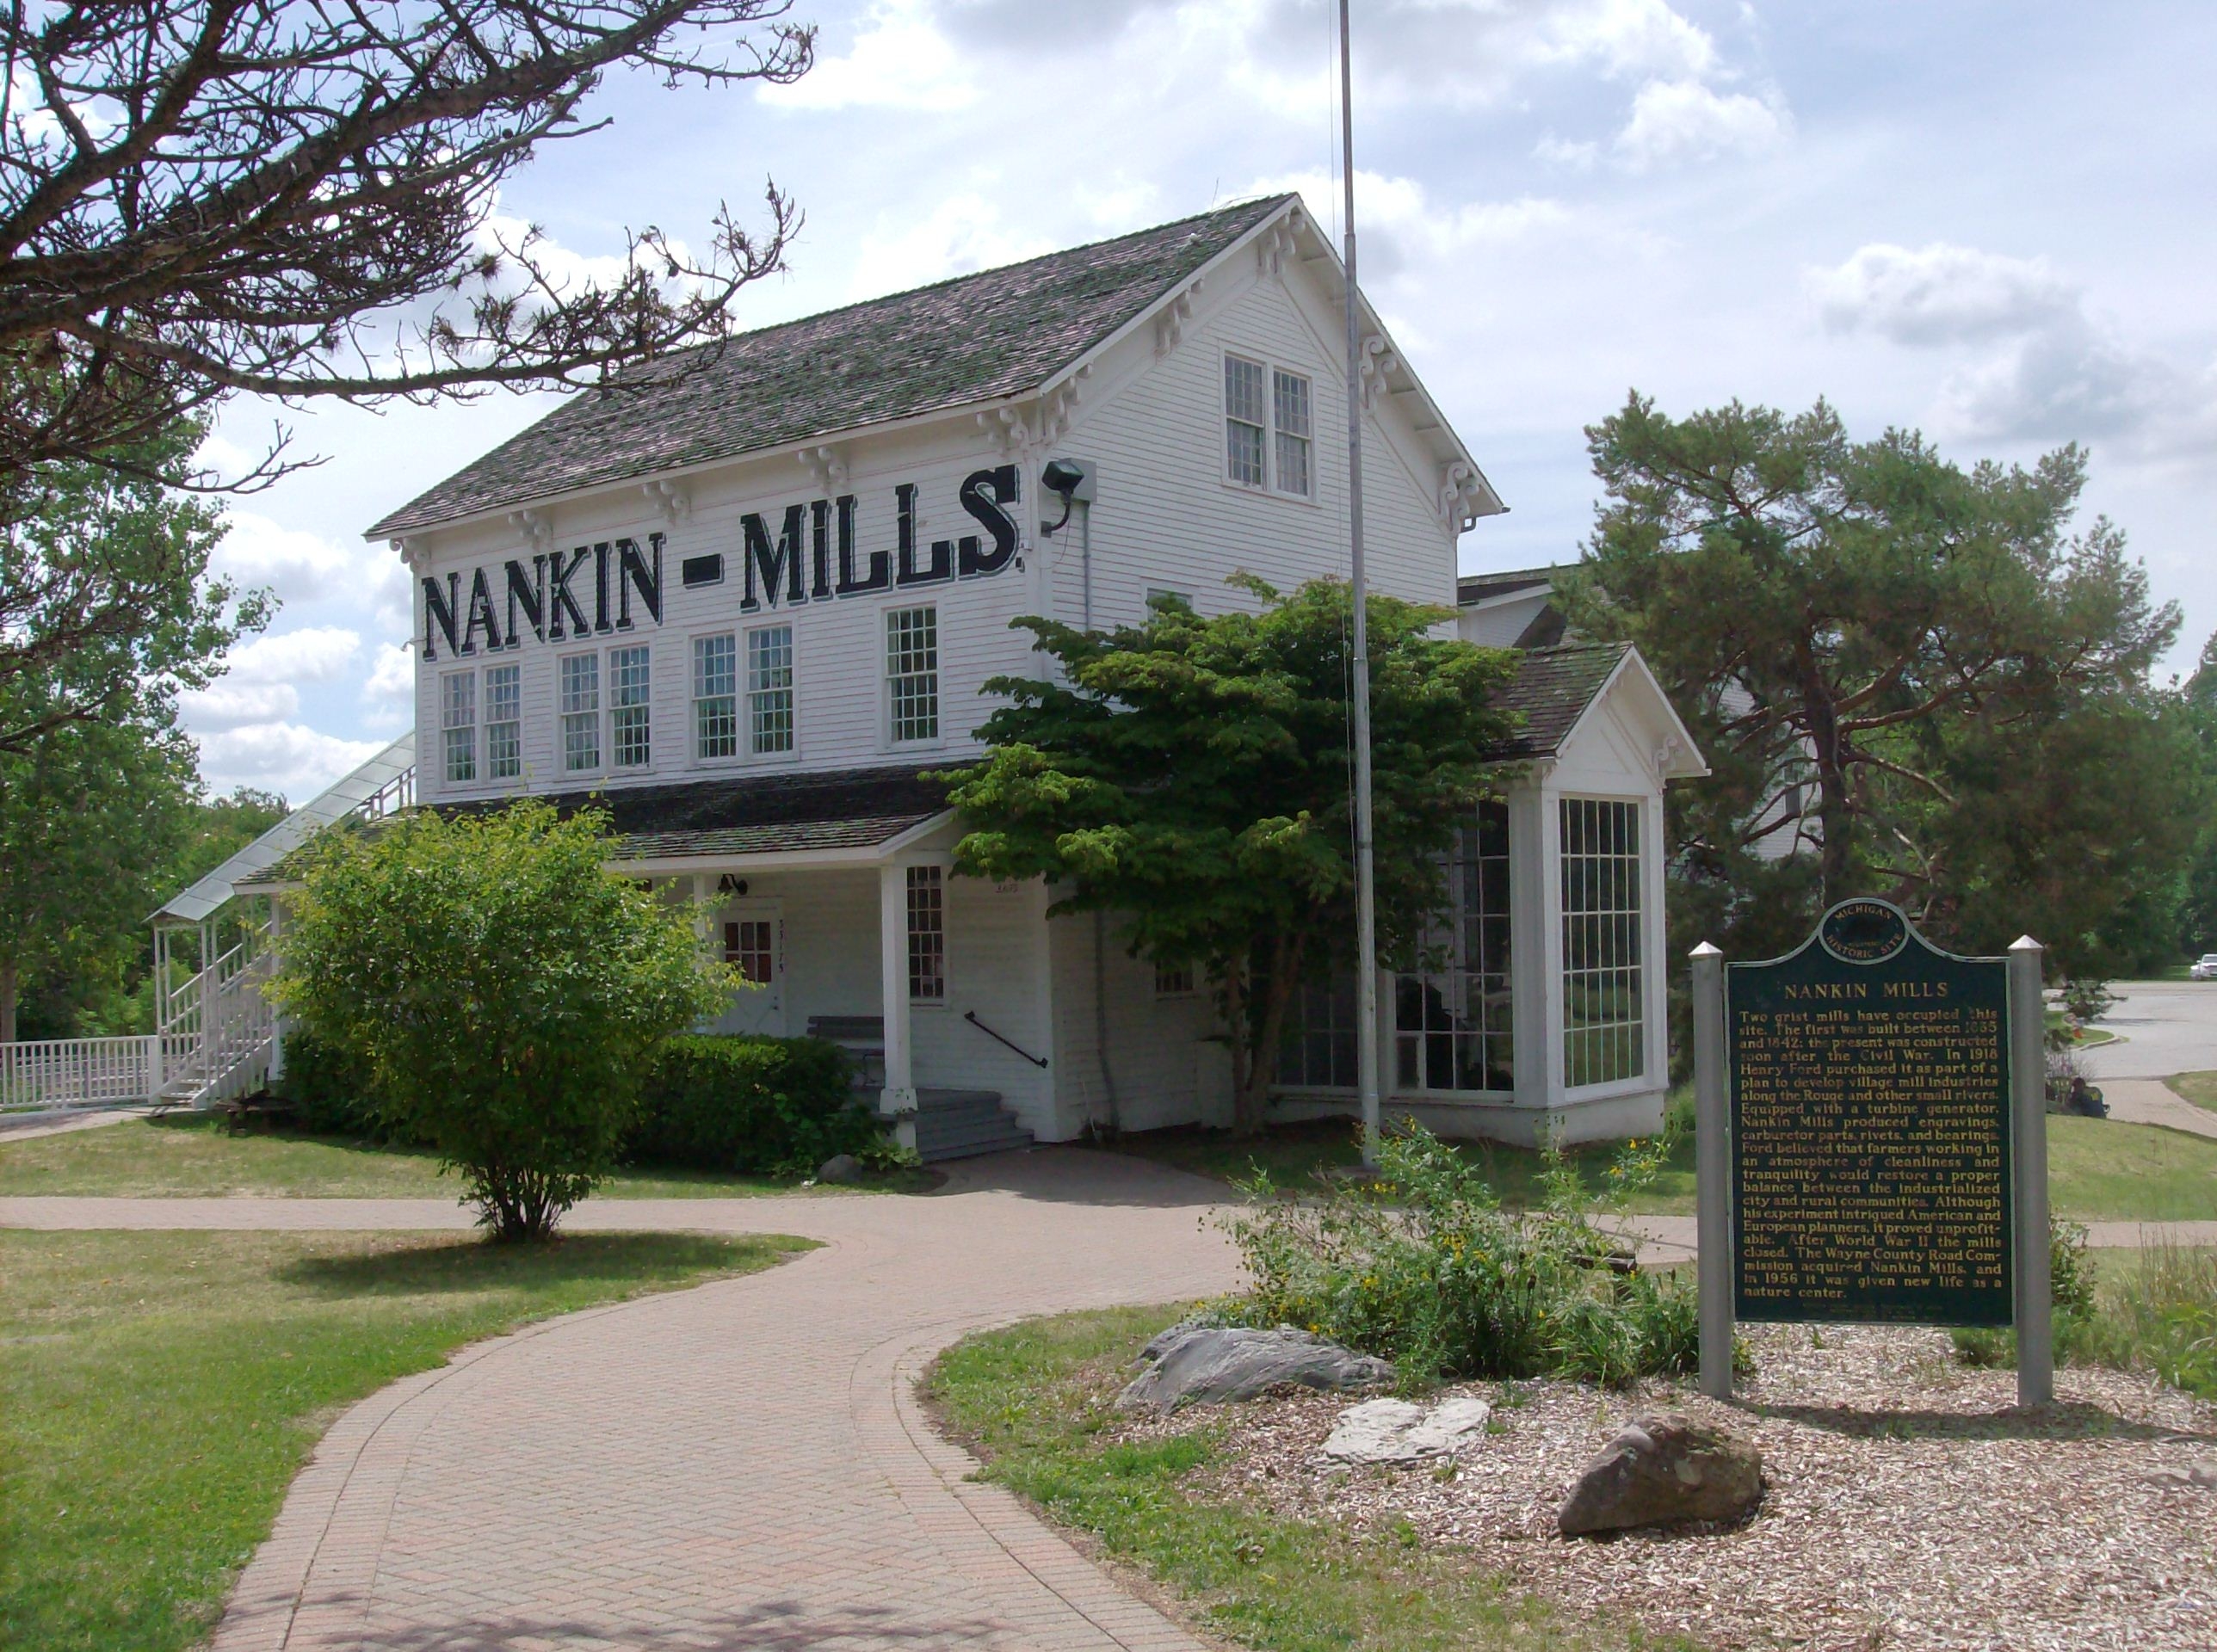 Nankin Mills Marker and Mill